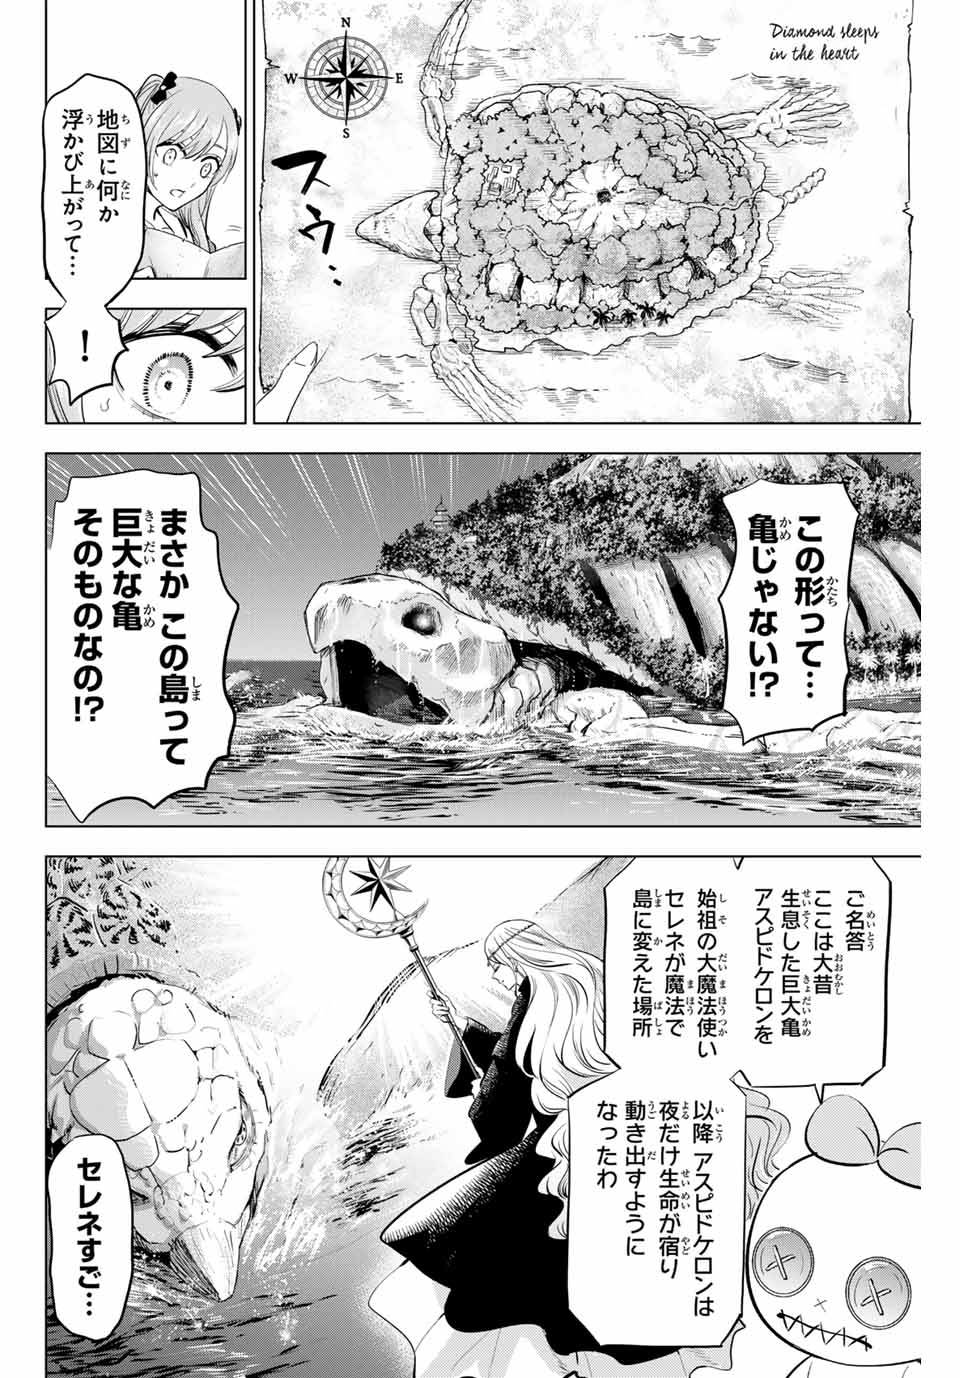 Kuroneko to Majo no Kyoushitsu - Chapter 52 - Page 2